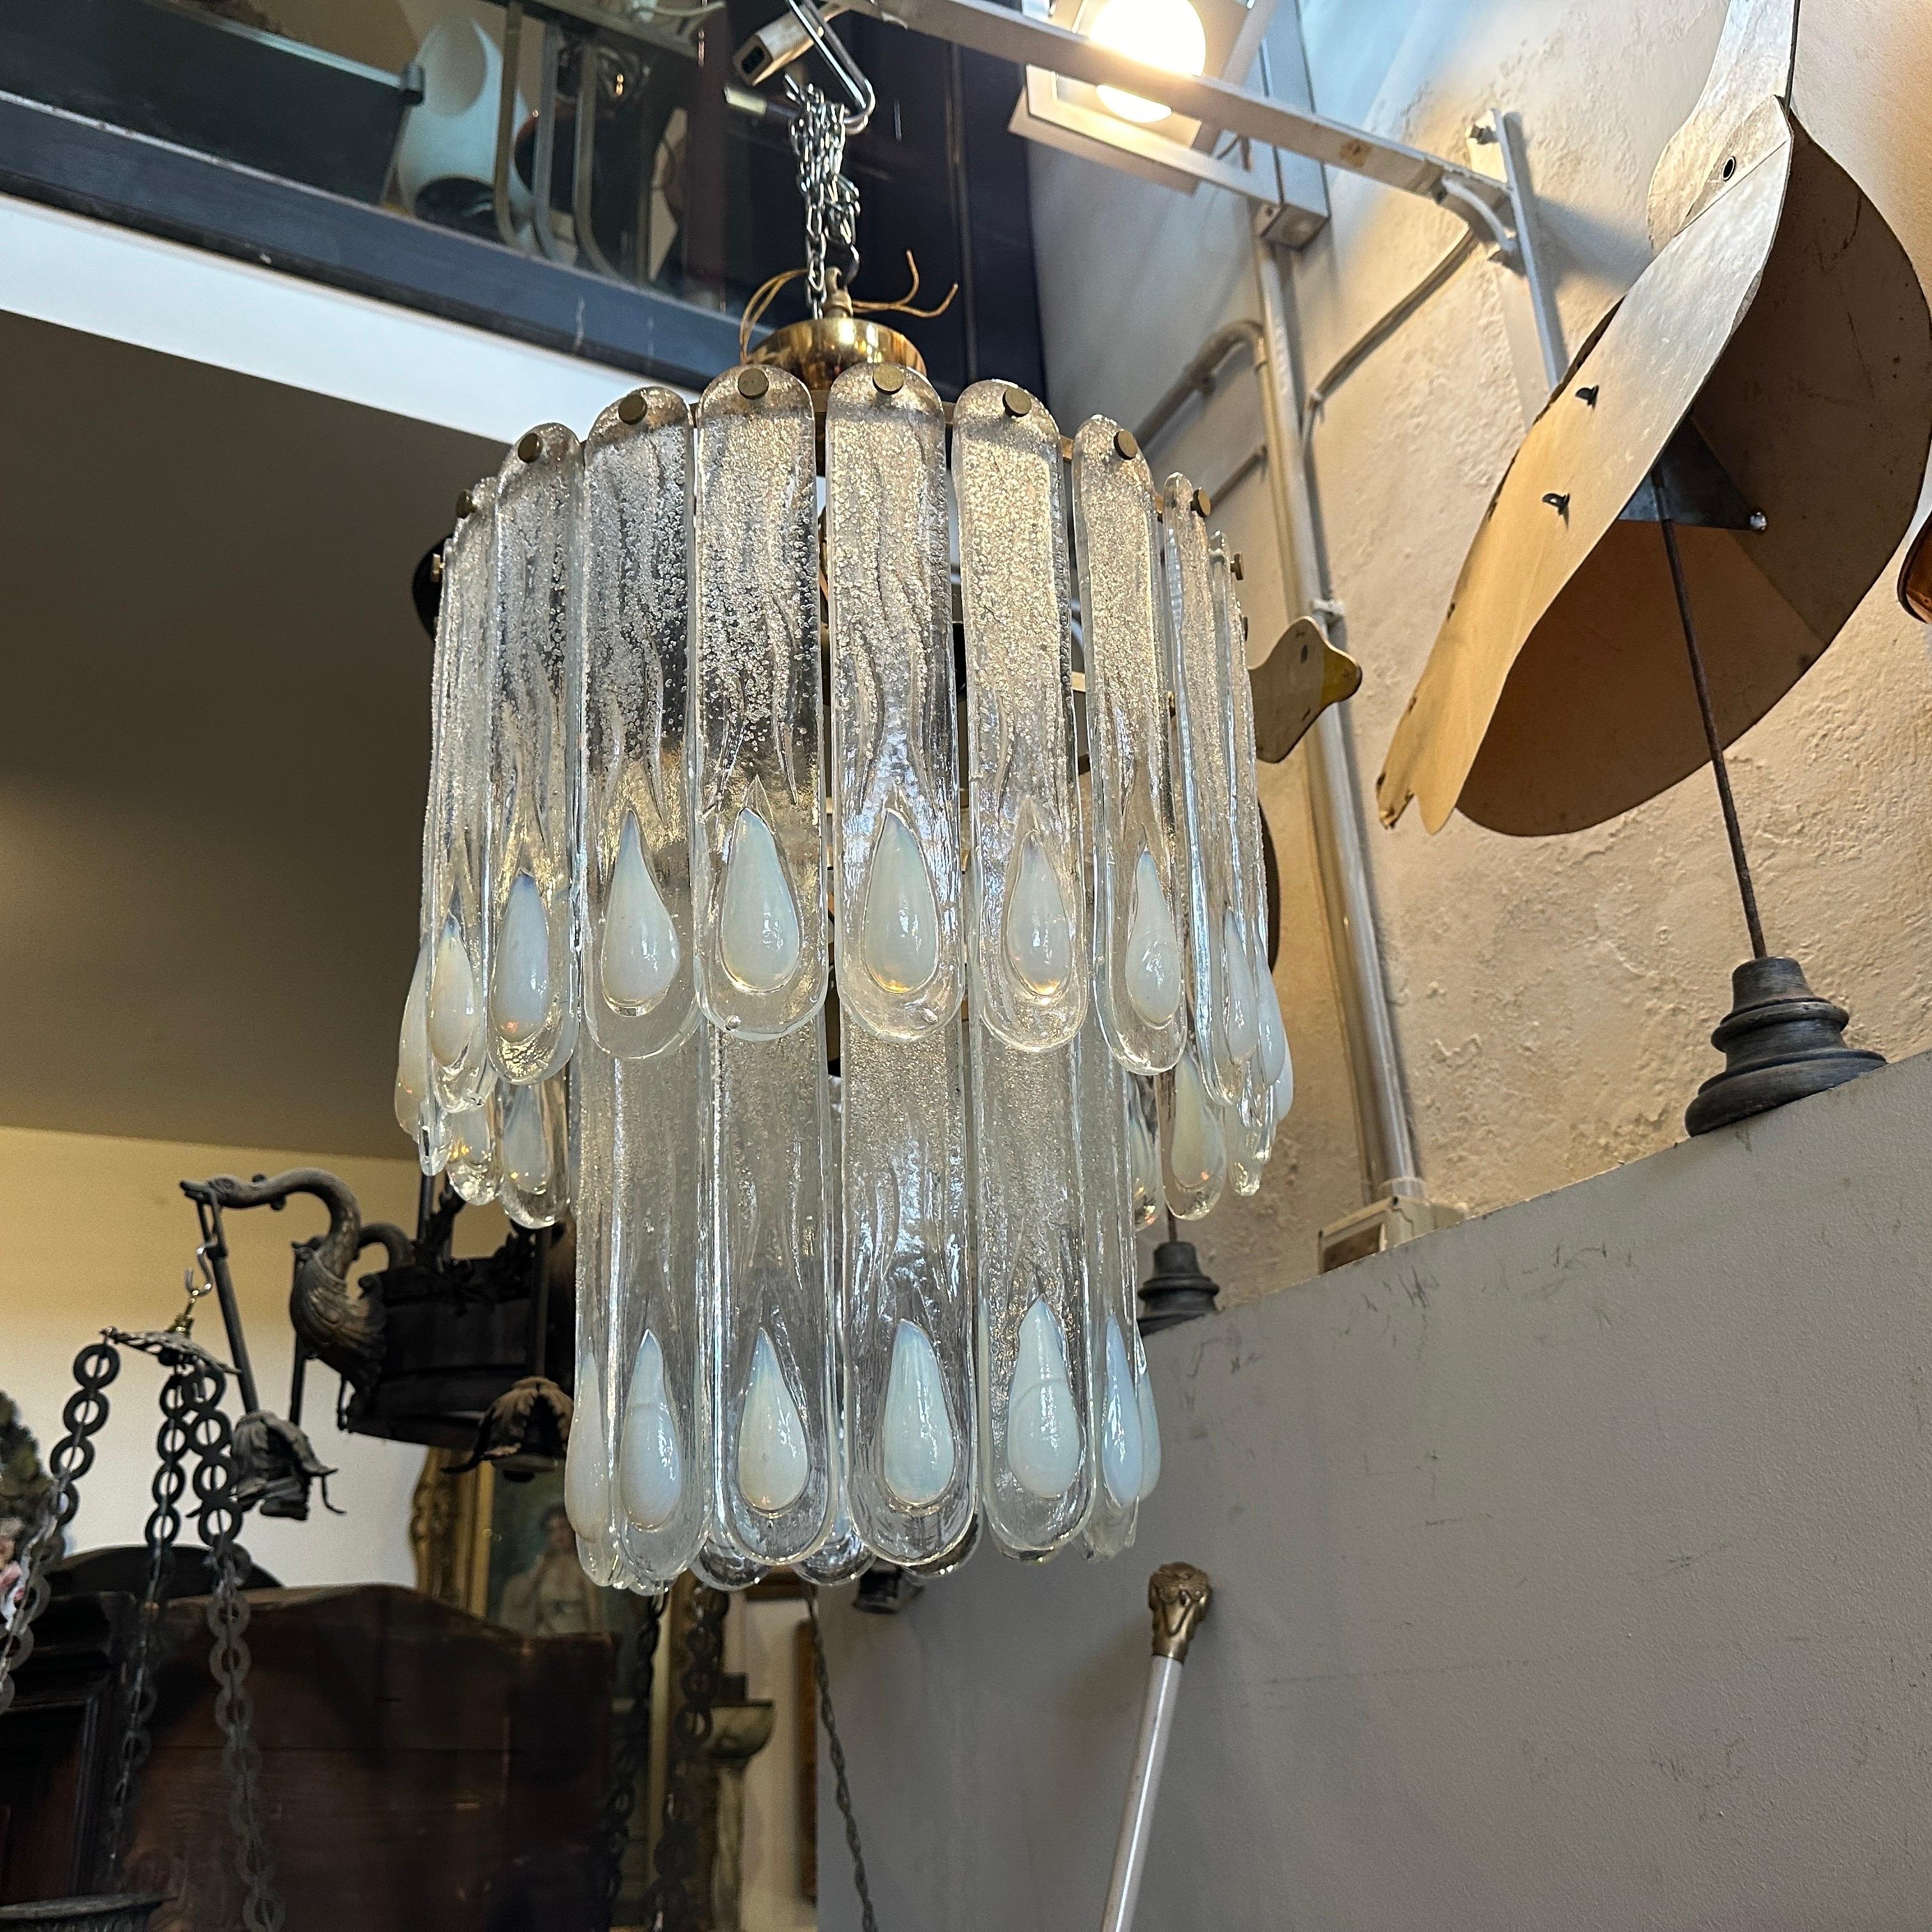 Un étonnant lustre en verre de Murano clair et opalescent, conçu et fabriqué à Murano par Mazzega dans les années soixante-dix. Les verres sont en parfait état, et les parties en métal doré sont également en très bon état dans l'ensemble ; il est en